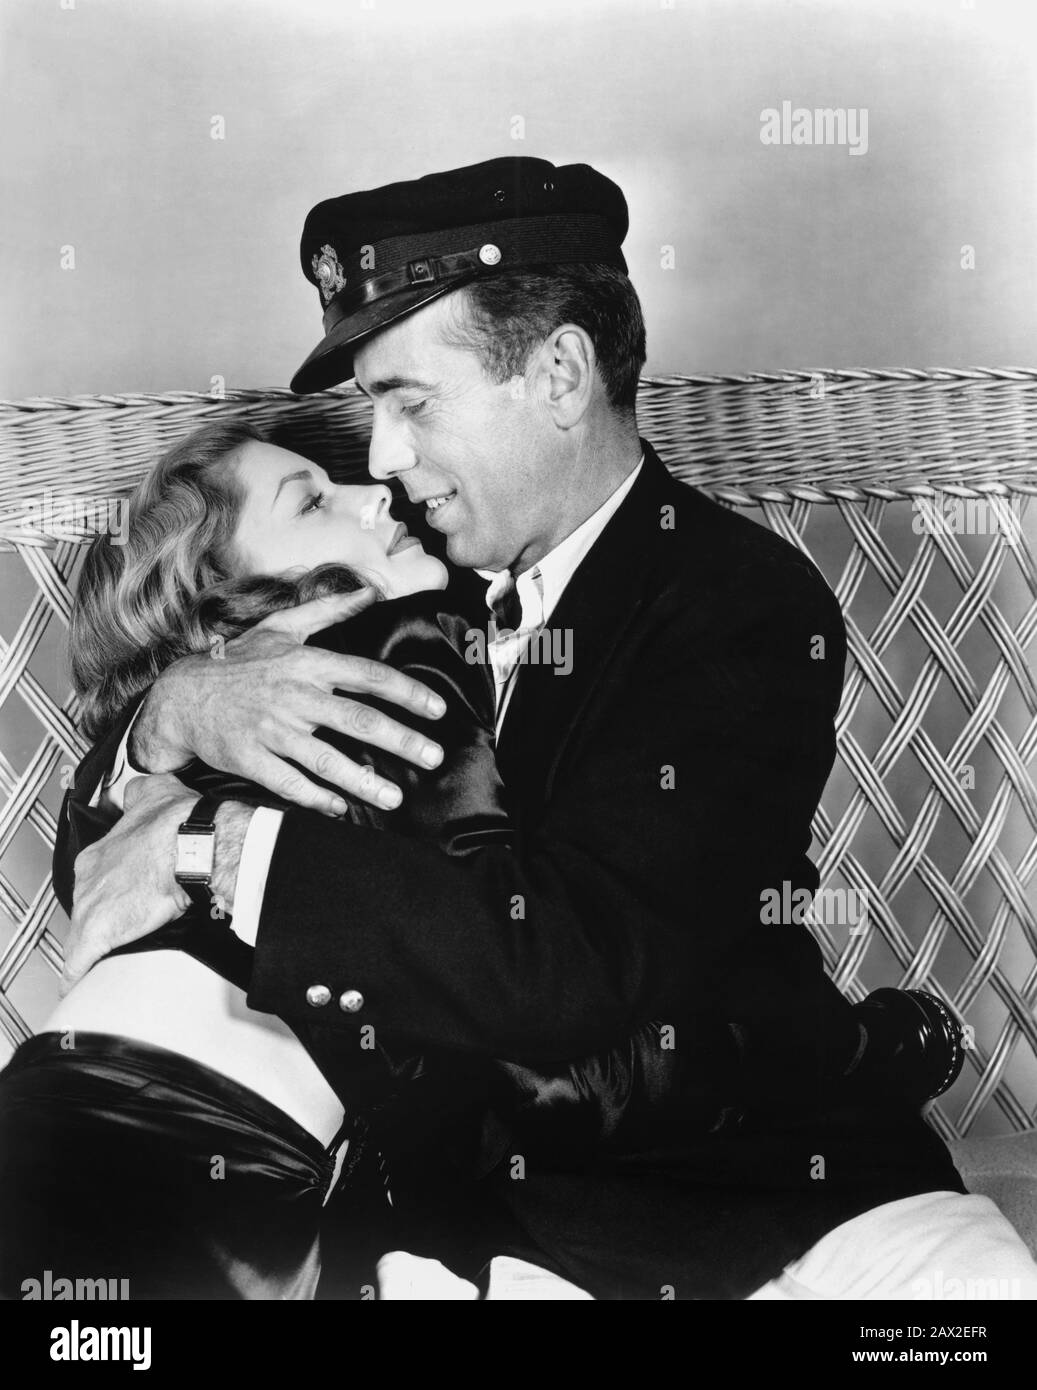 1944 , USA : Der Filmschauspieler HUMPHREY BOGART mit Frau LAUREN BACALL ( geborene Betty Weinstein Perske , New York 1924 ) hat UND HAT NICHT ( Acque del Sud ) von Howard Hawks. Aus einem Roman von Ernest Hemingway - FILM - KINO - FILM - FILM - Film - Liebhaber - innamorati - Amanti - Profilo - Profil - Kuss - Bacio - Bionda - blondes Haar - Blondie - Capelli biondi - dunkle Dame - Darklady - Darklady - Dark-Lady - - - - - -- - Archivio GBB Stockfoto